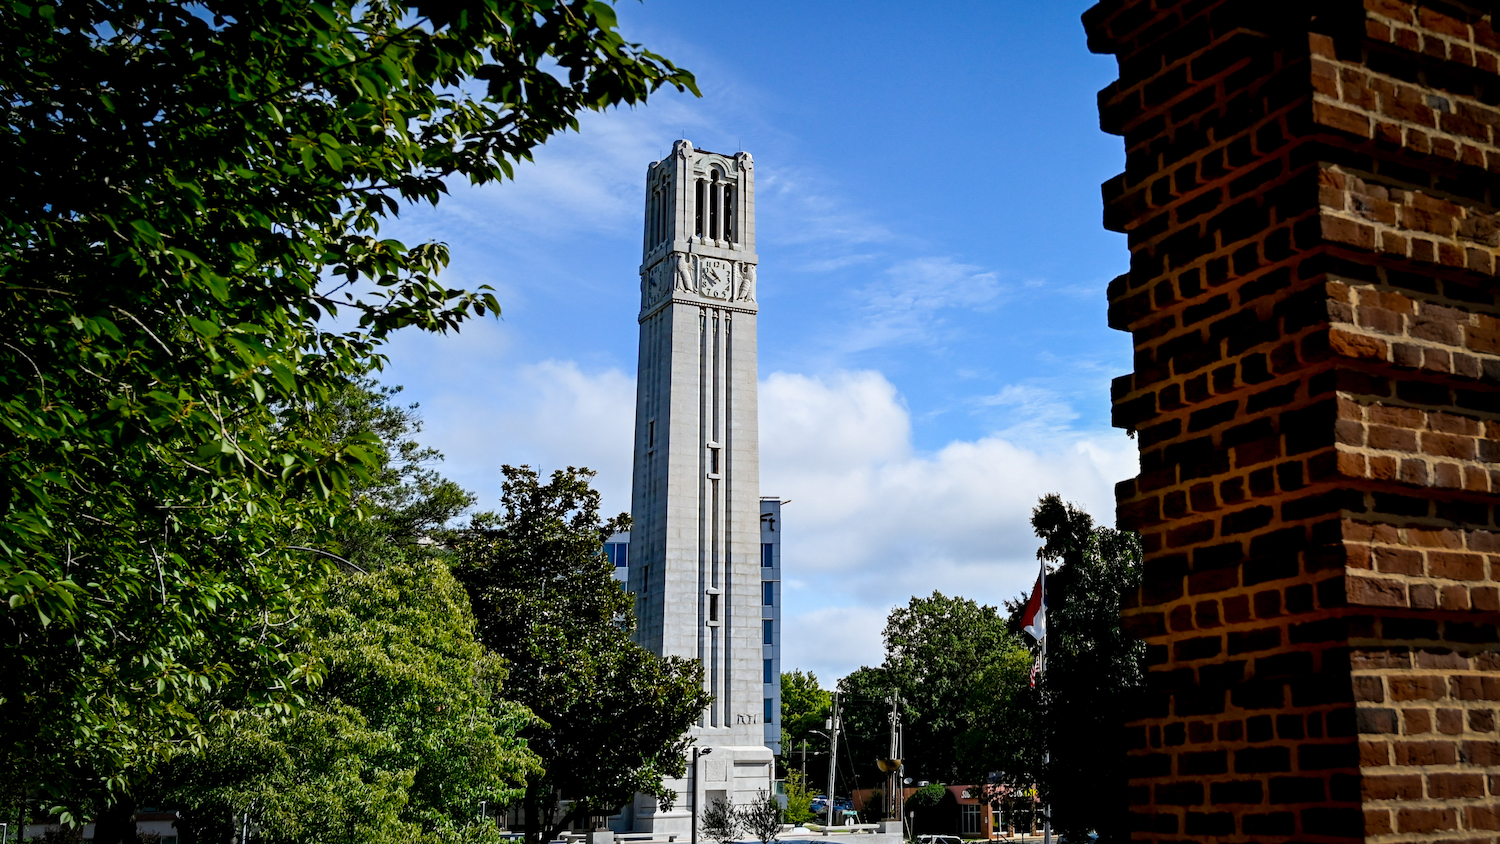 NC State Memorial Belltower with blue skies behind it.